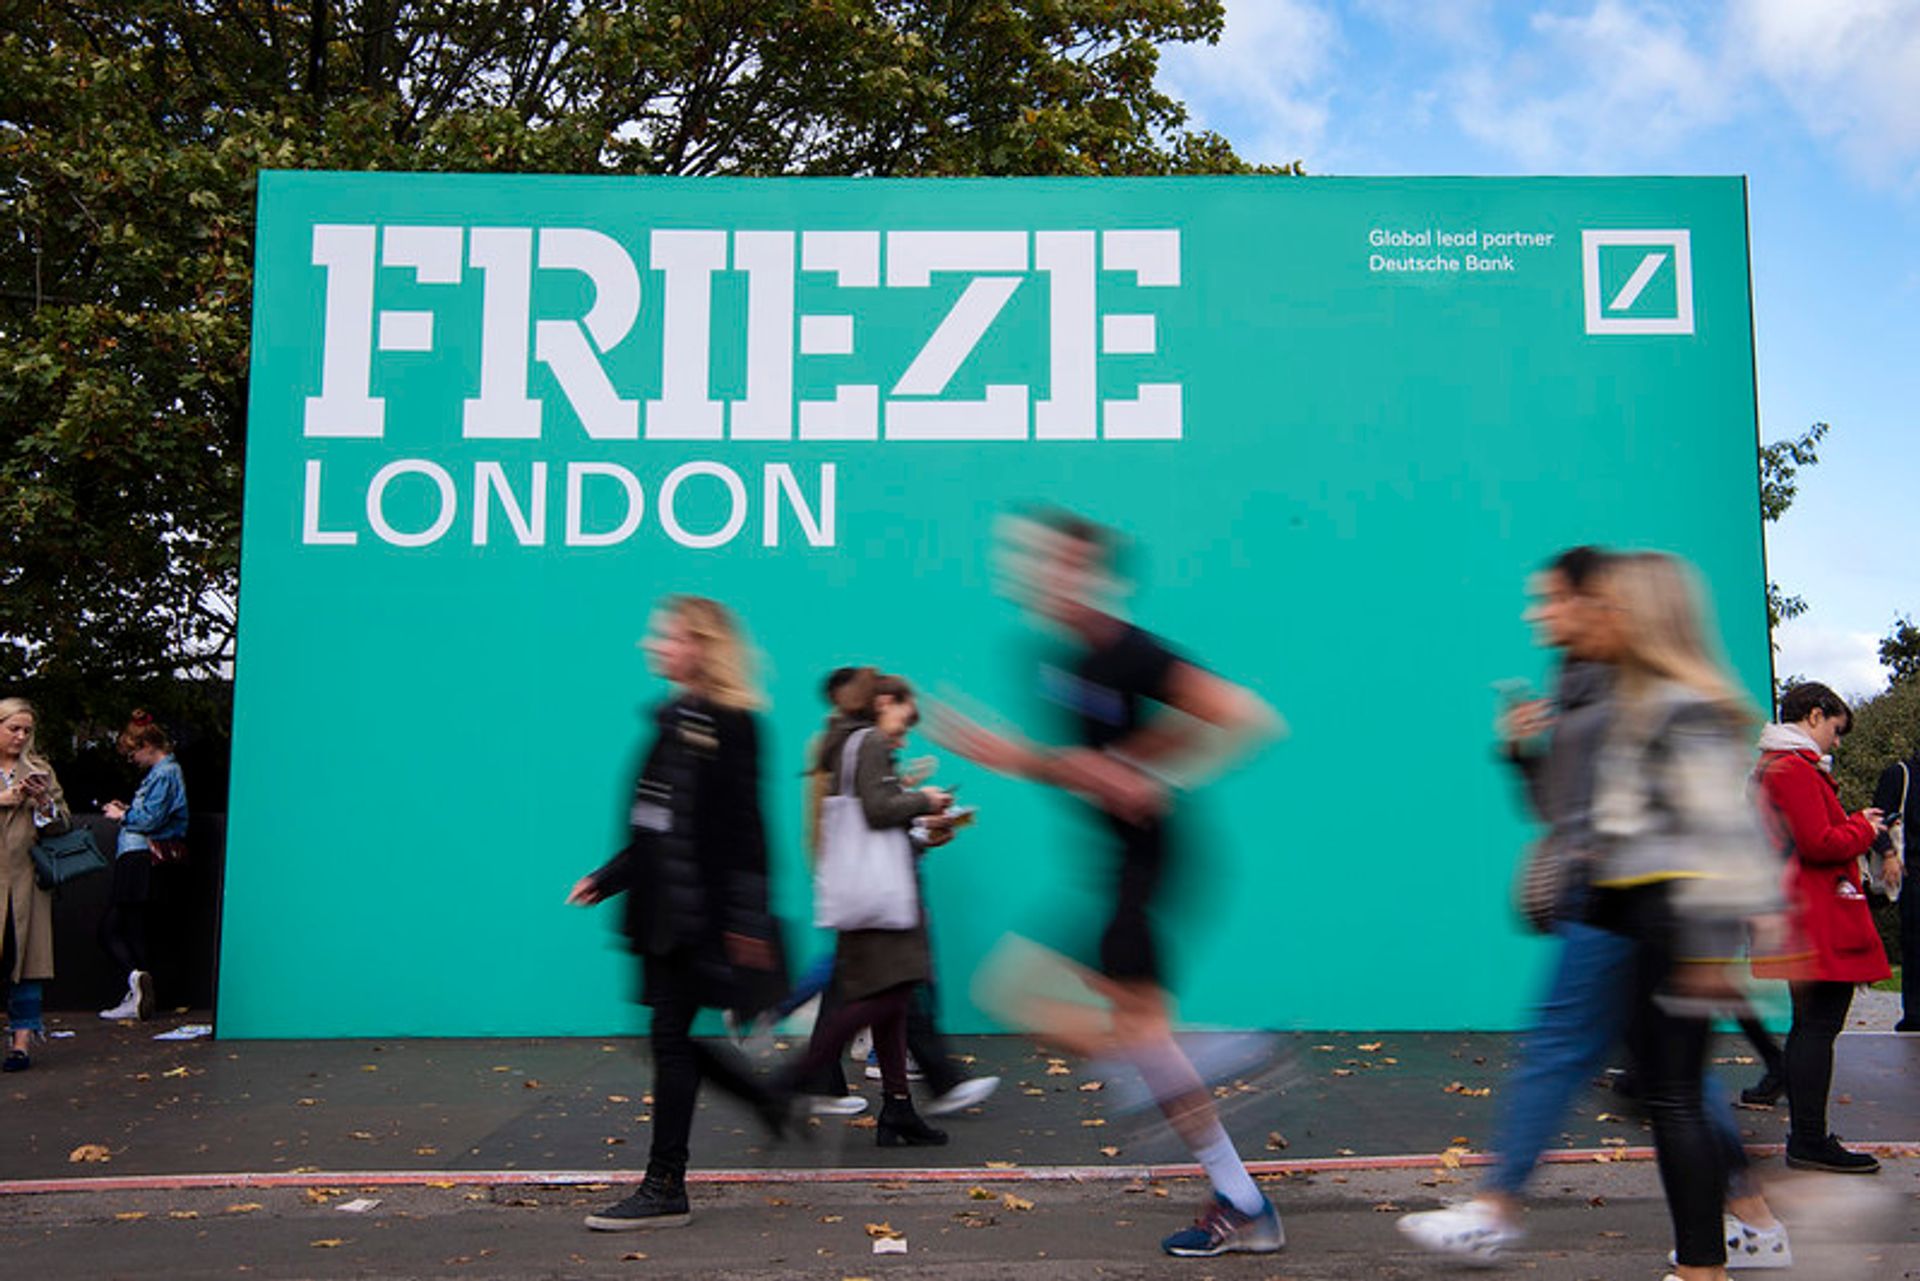 Frieze London 2019. Photo by Linda Nylind. Courtesy of Linda Nylind/Frieze